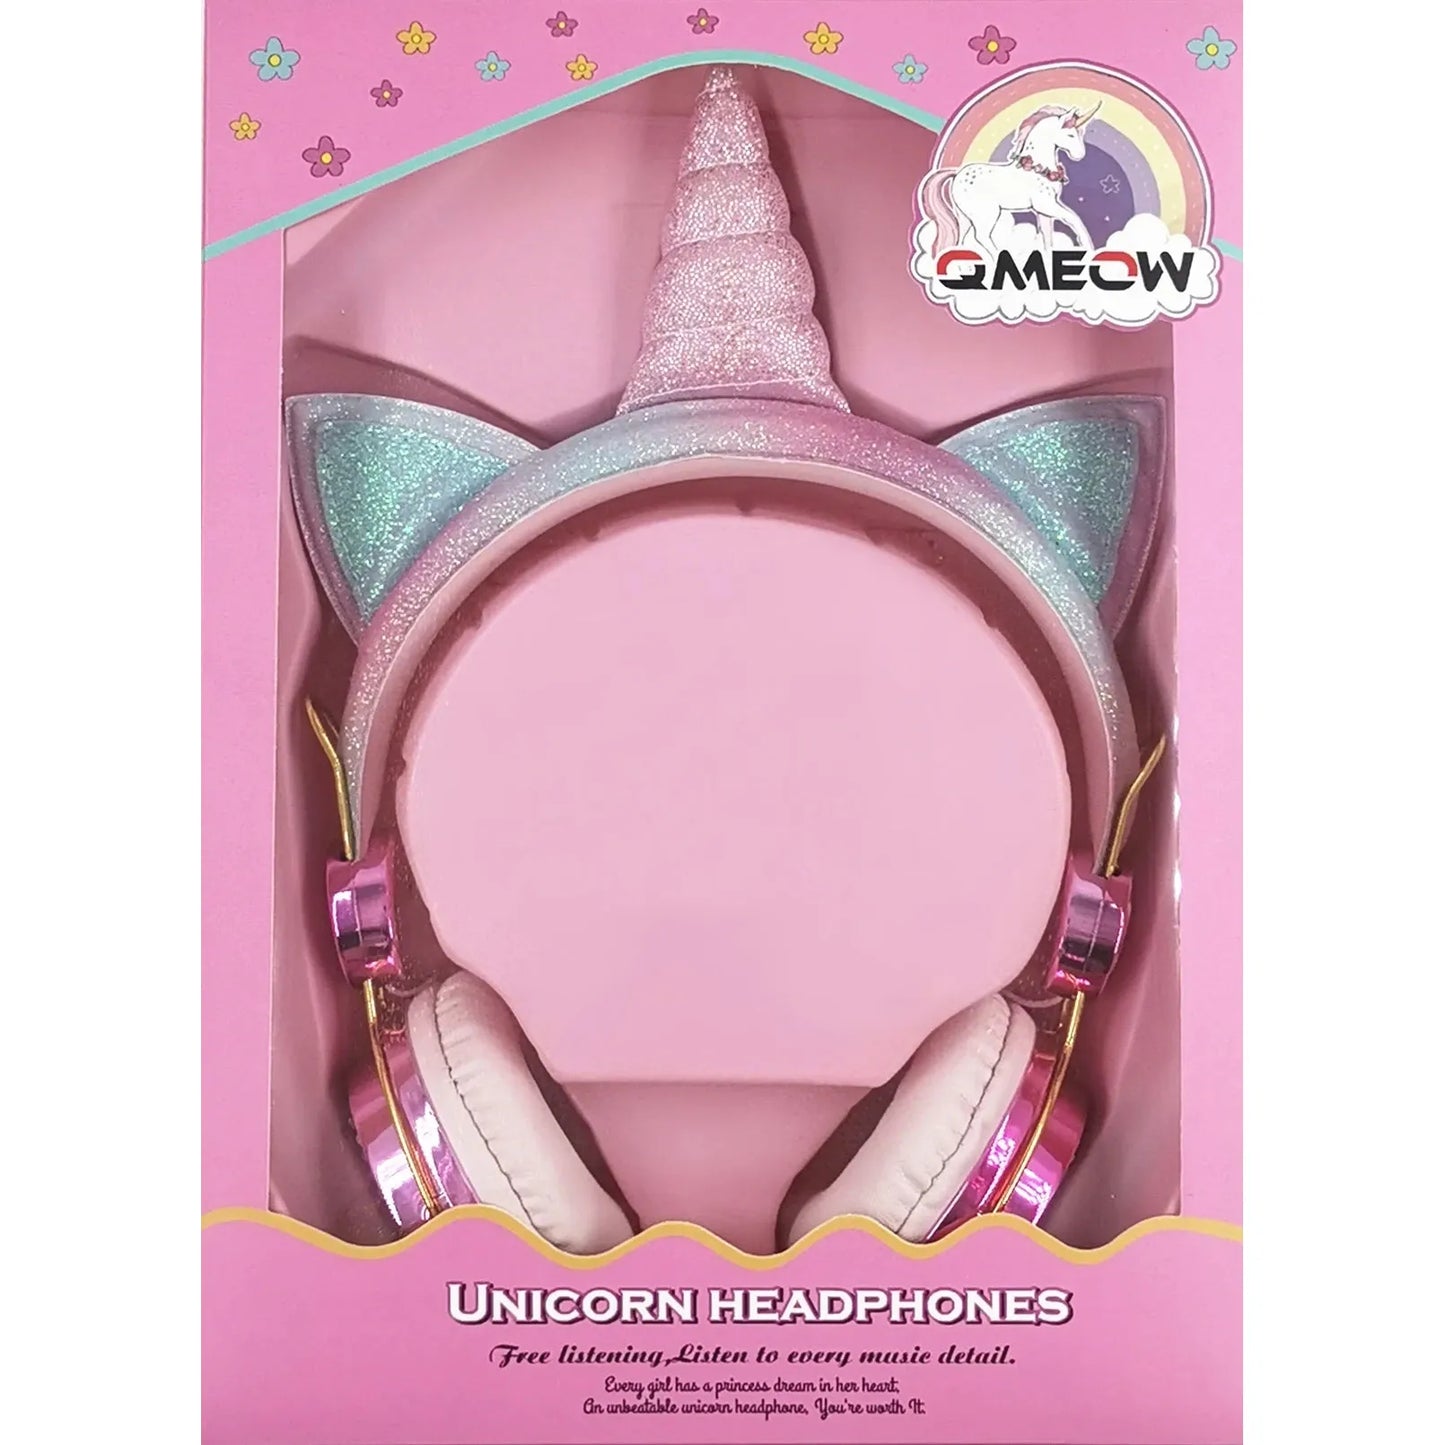 Rainbow Unicorn Wired Headphones